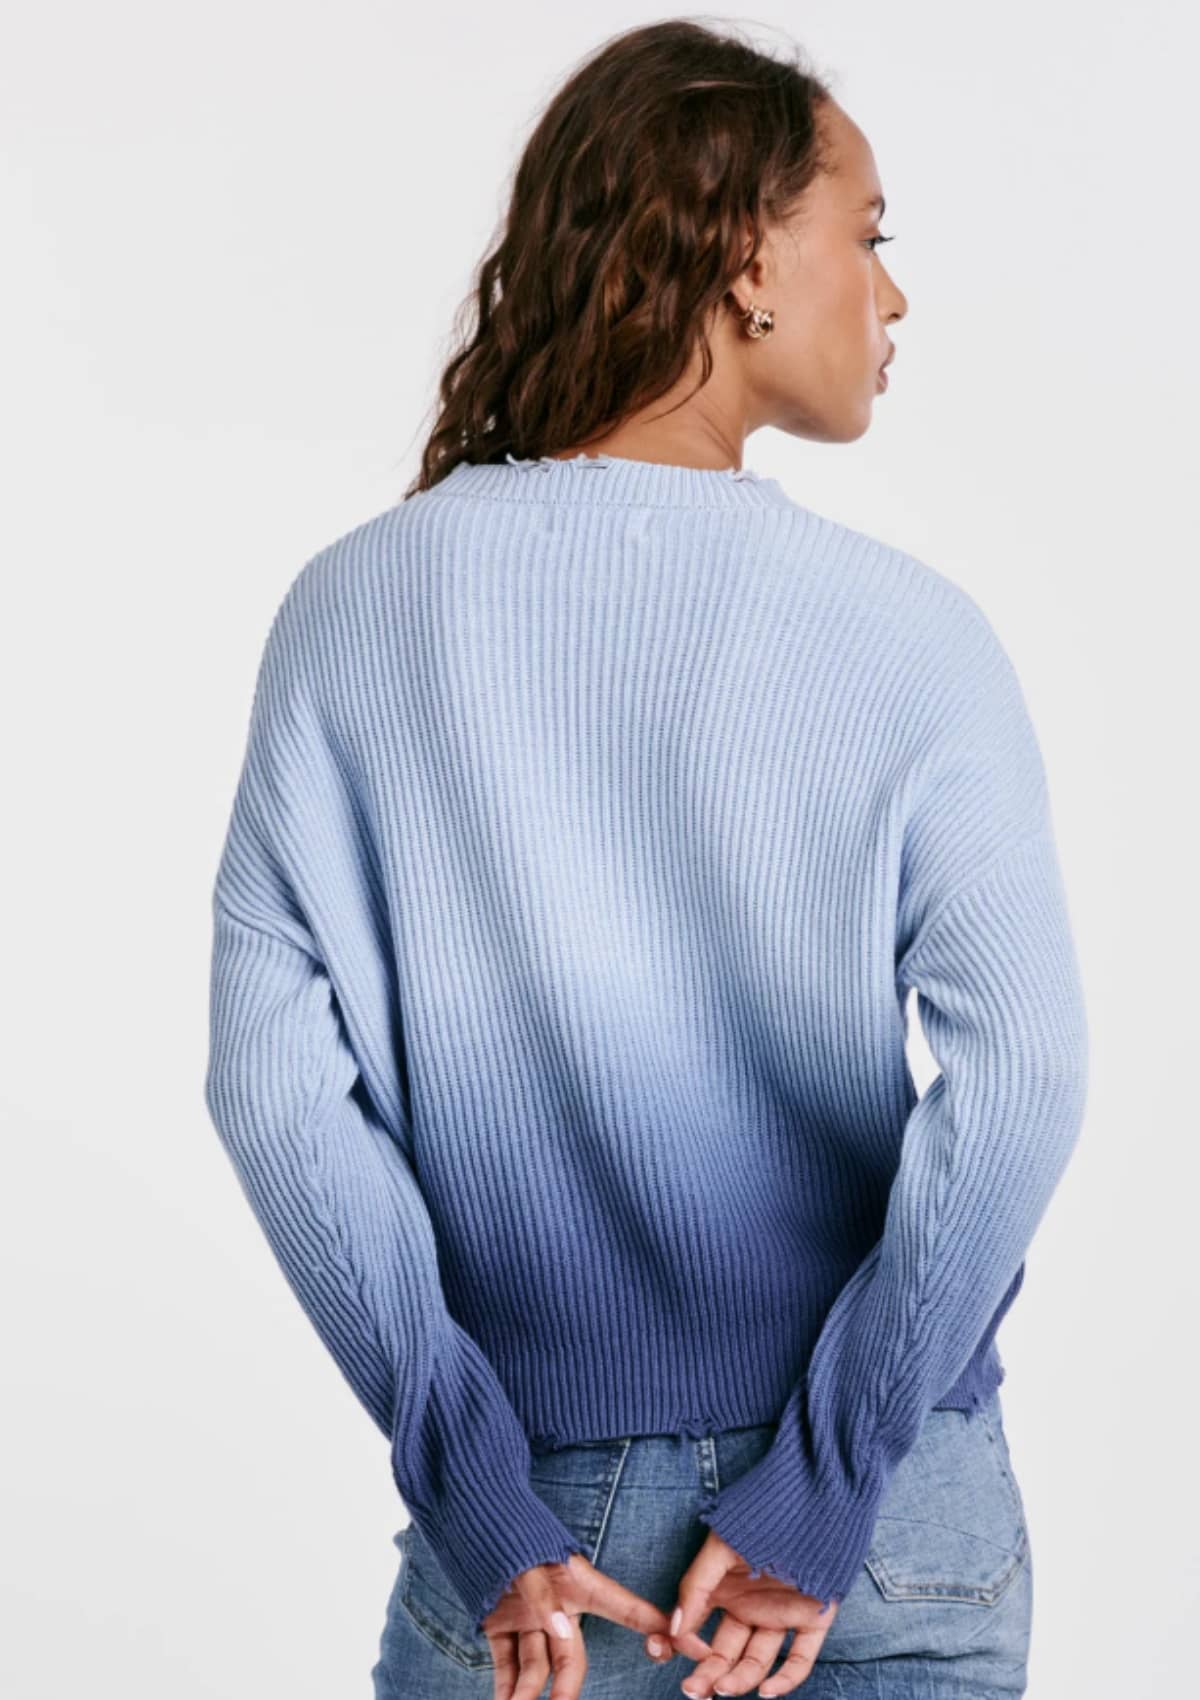 Sydney Sweater - Eternal Blue -Dear John Denim, Inc.- Ruby Jane-